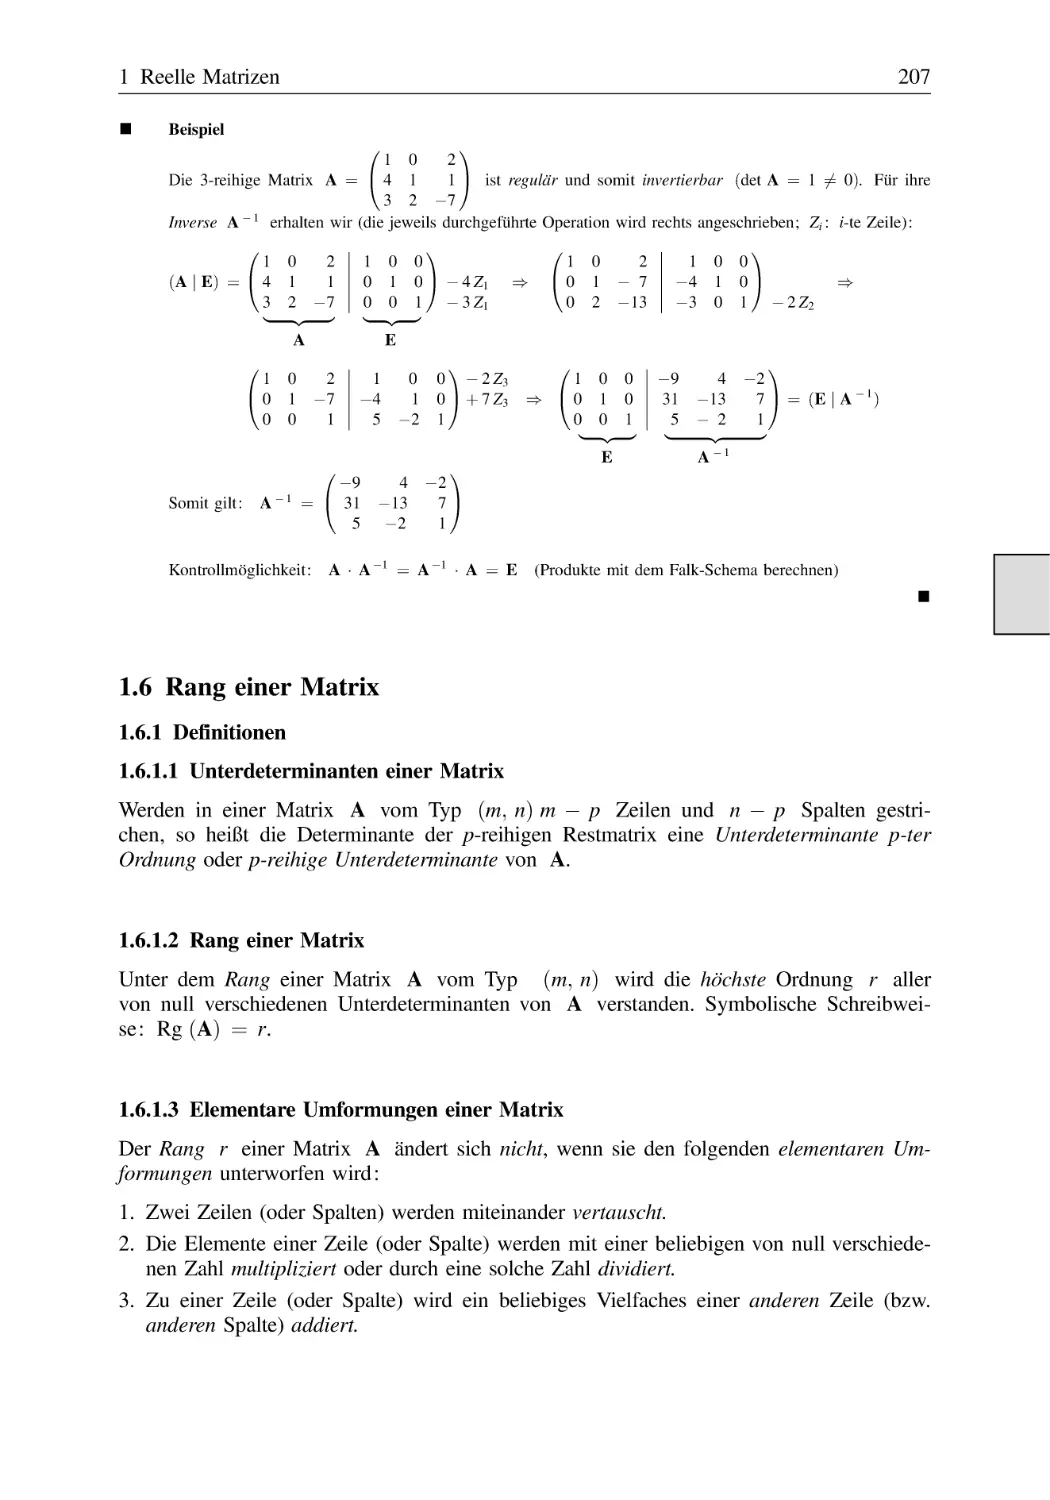 1.6 Rang einer Matrix
1.6.1 Definitionen
1.6.1.1 Unterdeterminanten einer Matrix
1.6.1.2 Rang einer Matrix
1.6.1.3 Elementare Umformungen einer Matrix